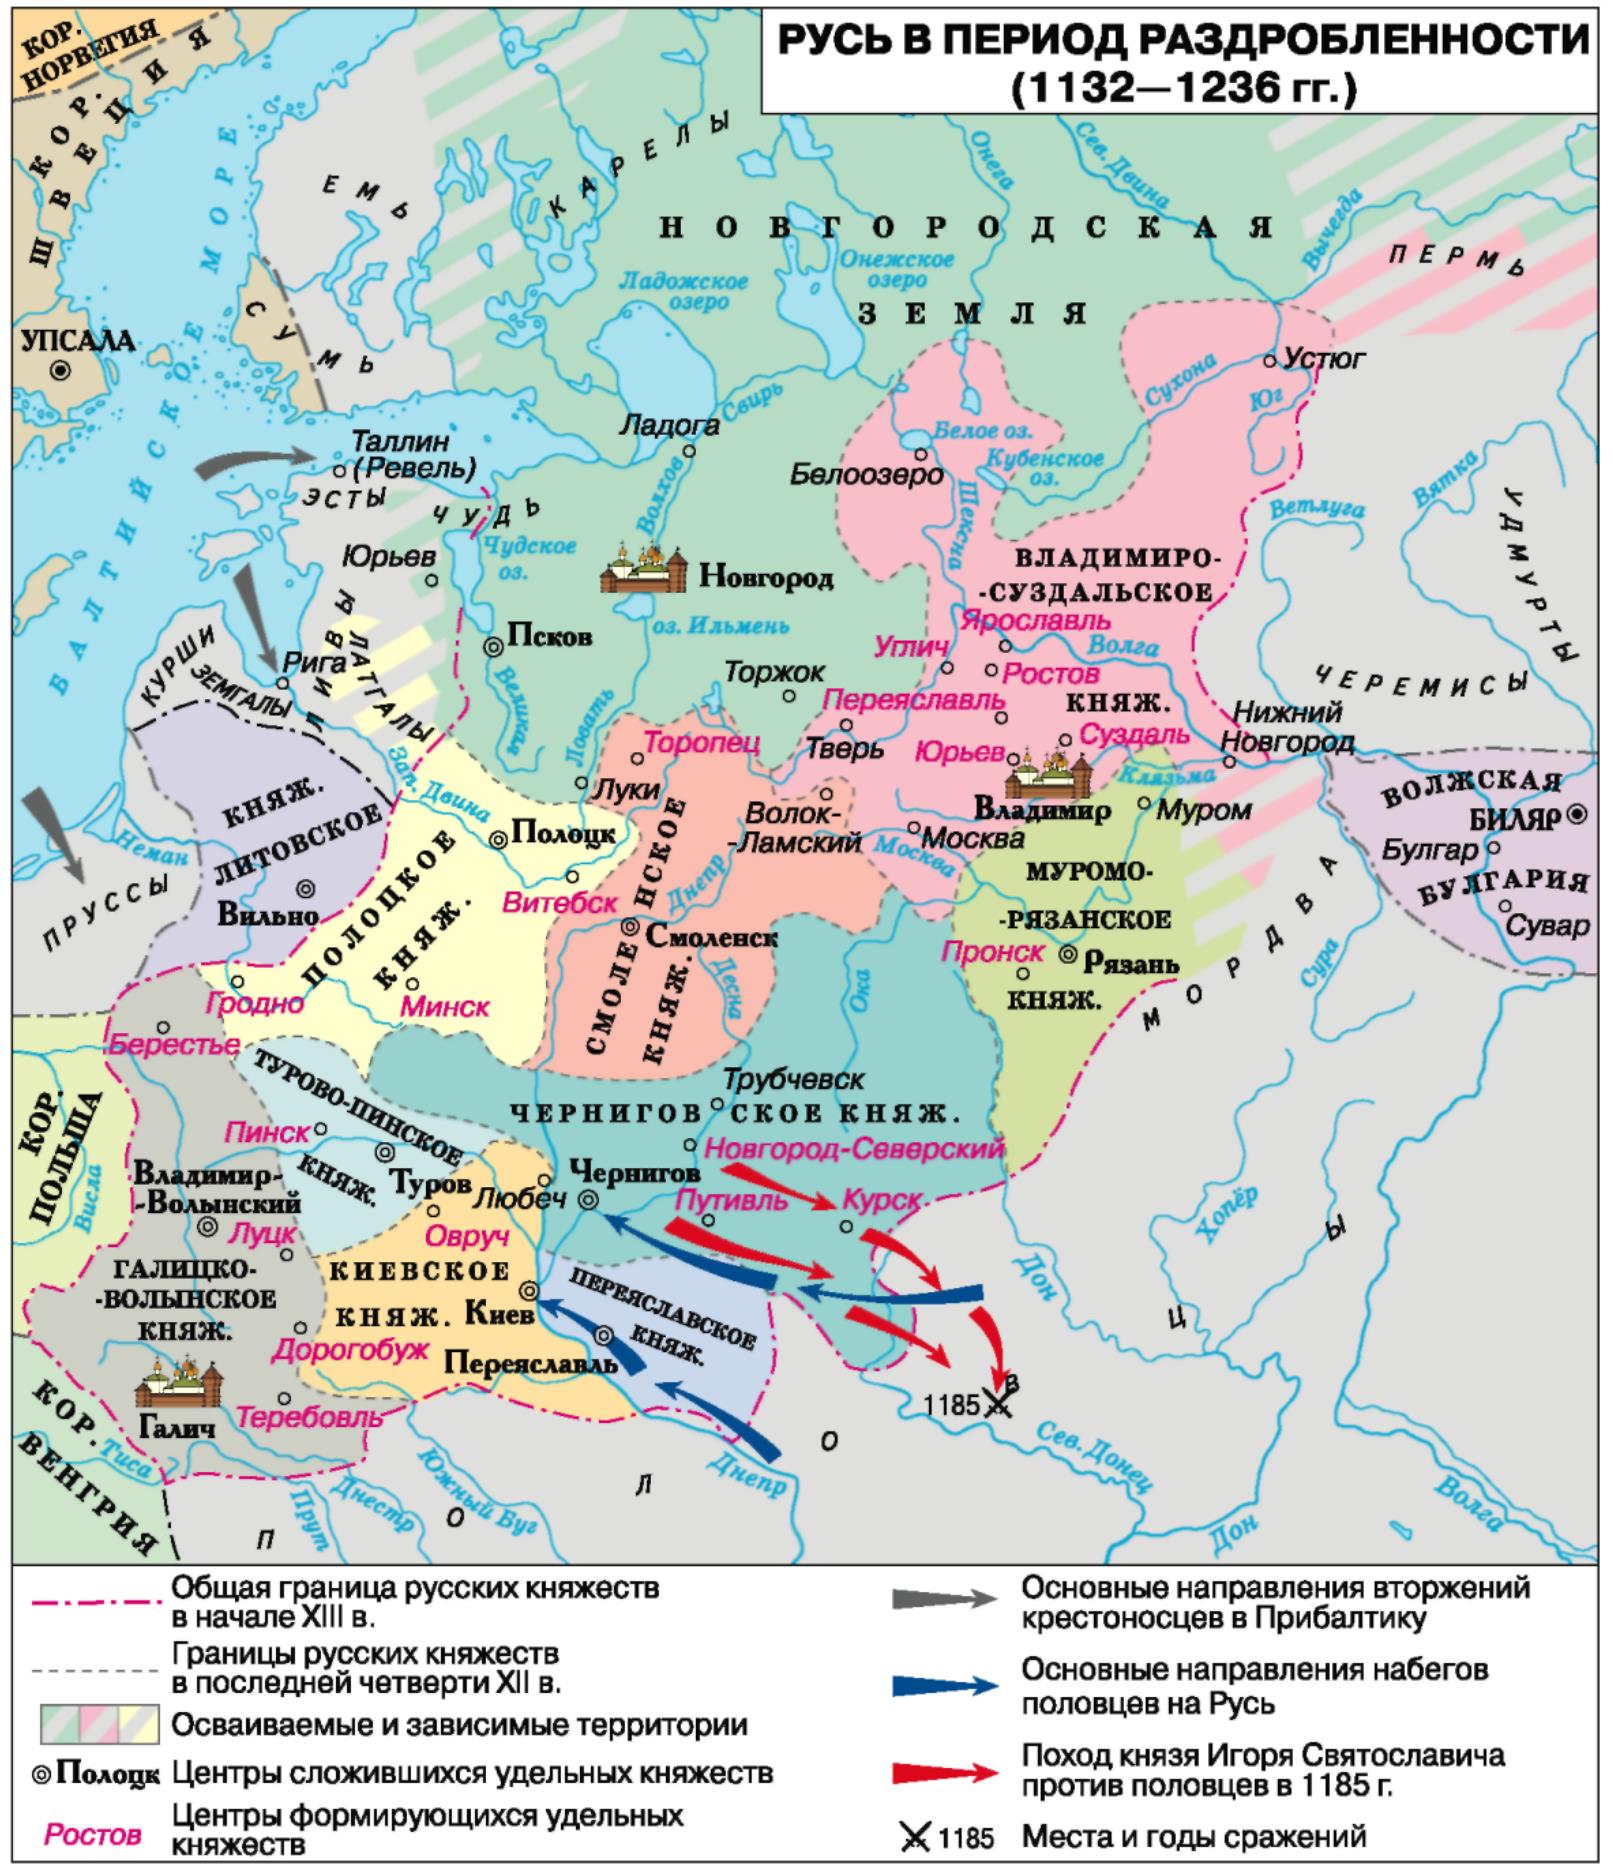 Карта Руси в период феодальной раздробленности